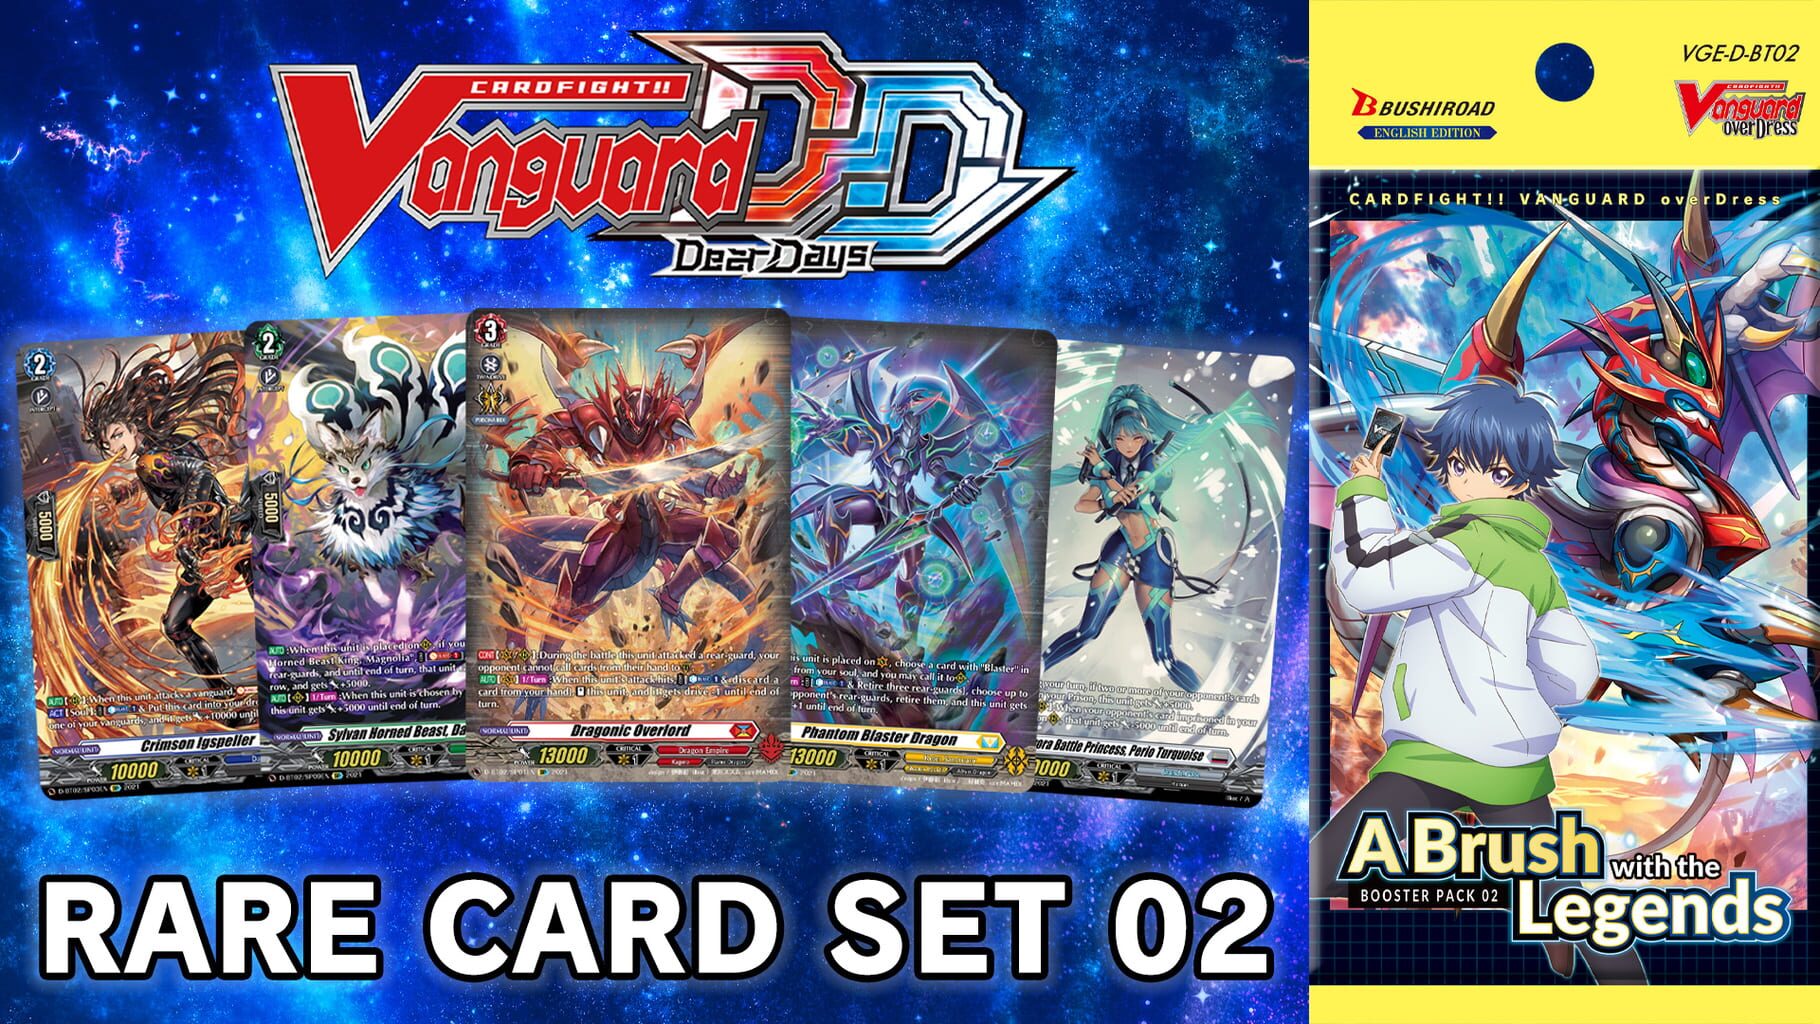 Cardfight!! Vanguard: Dear Days - Rare Card Set 02 D-BT02: A Brush with the Legends artwork